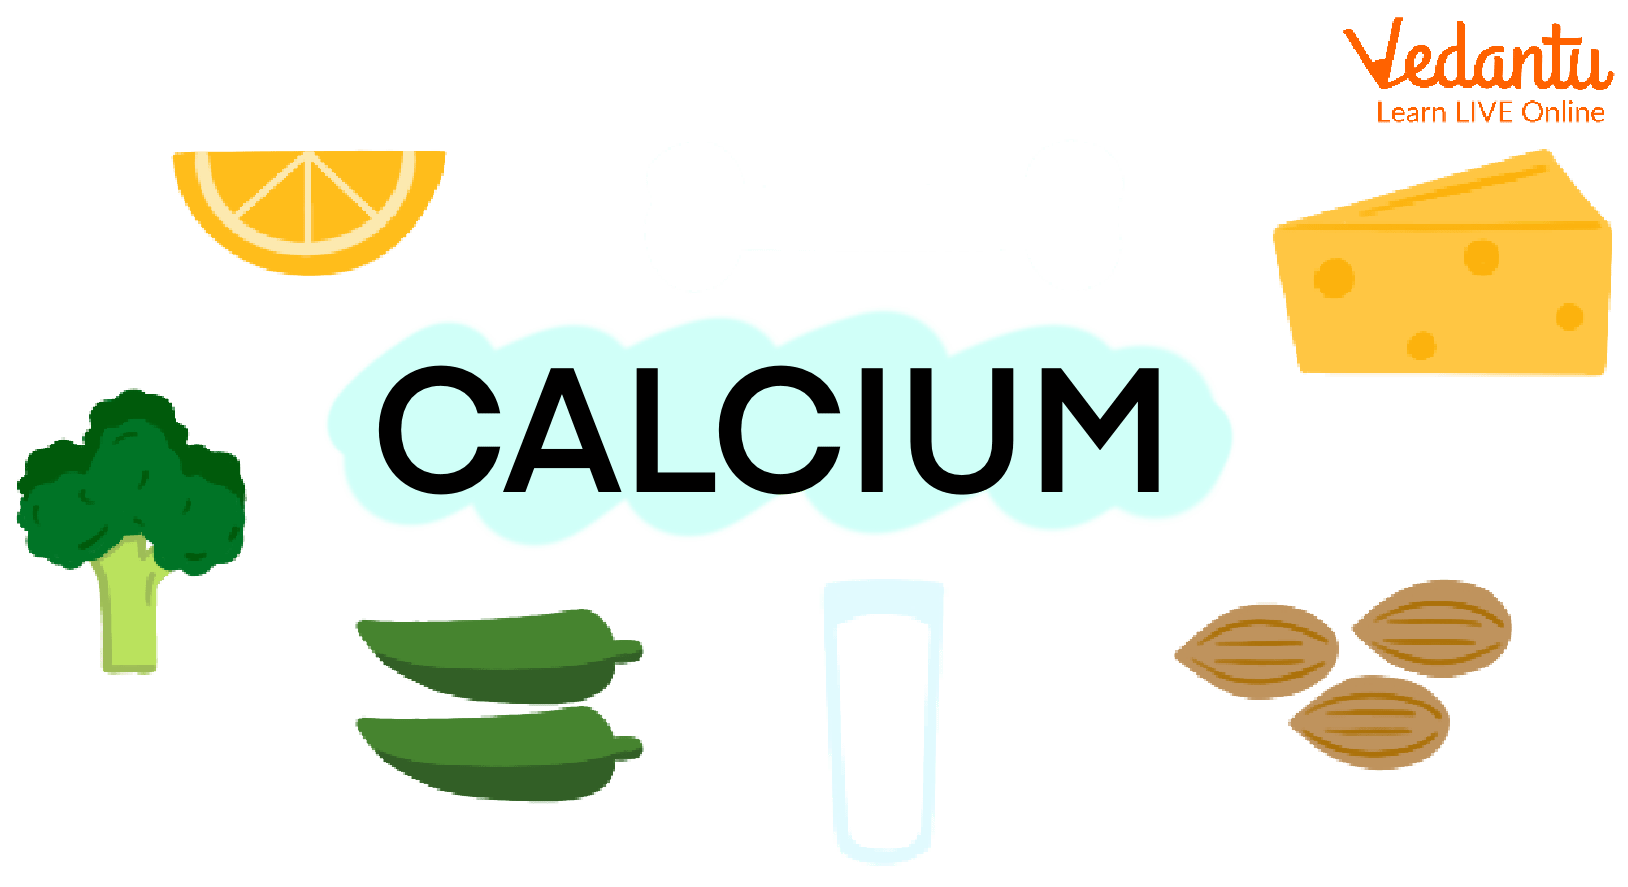 Calcium in the diet